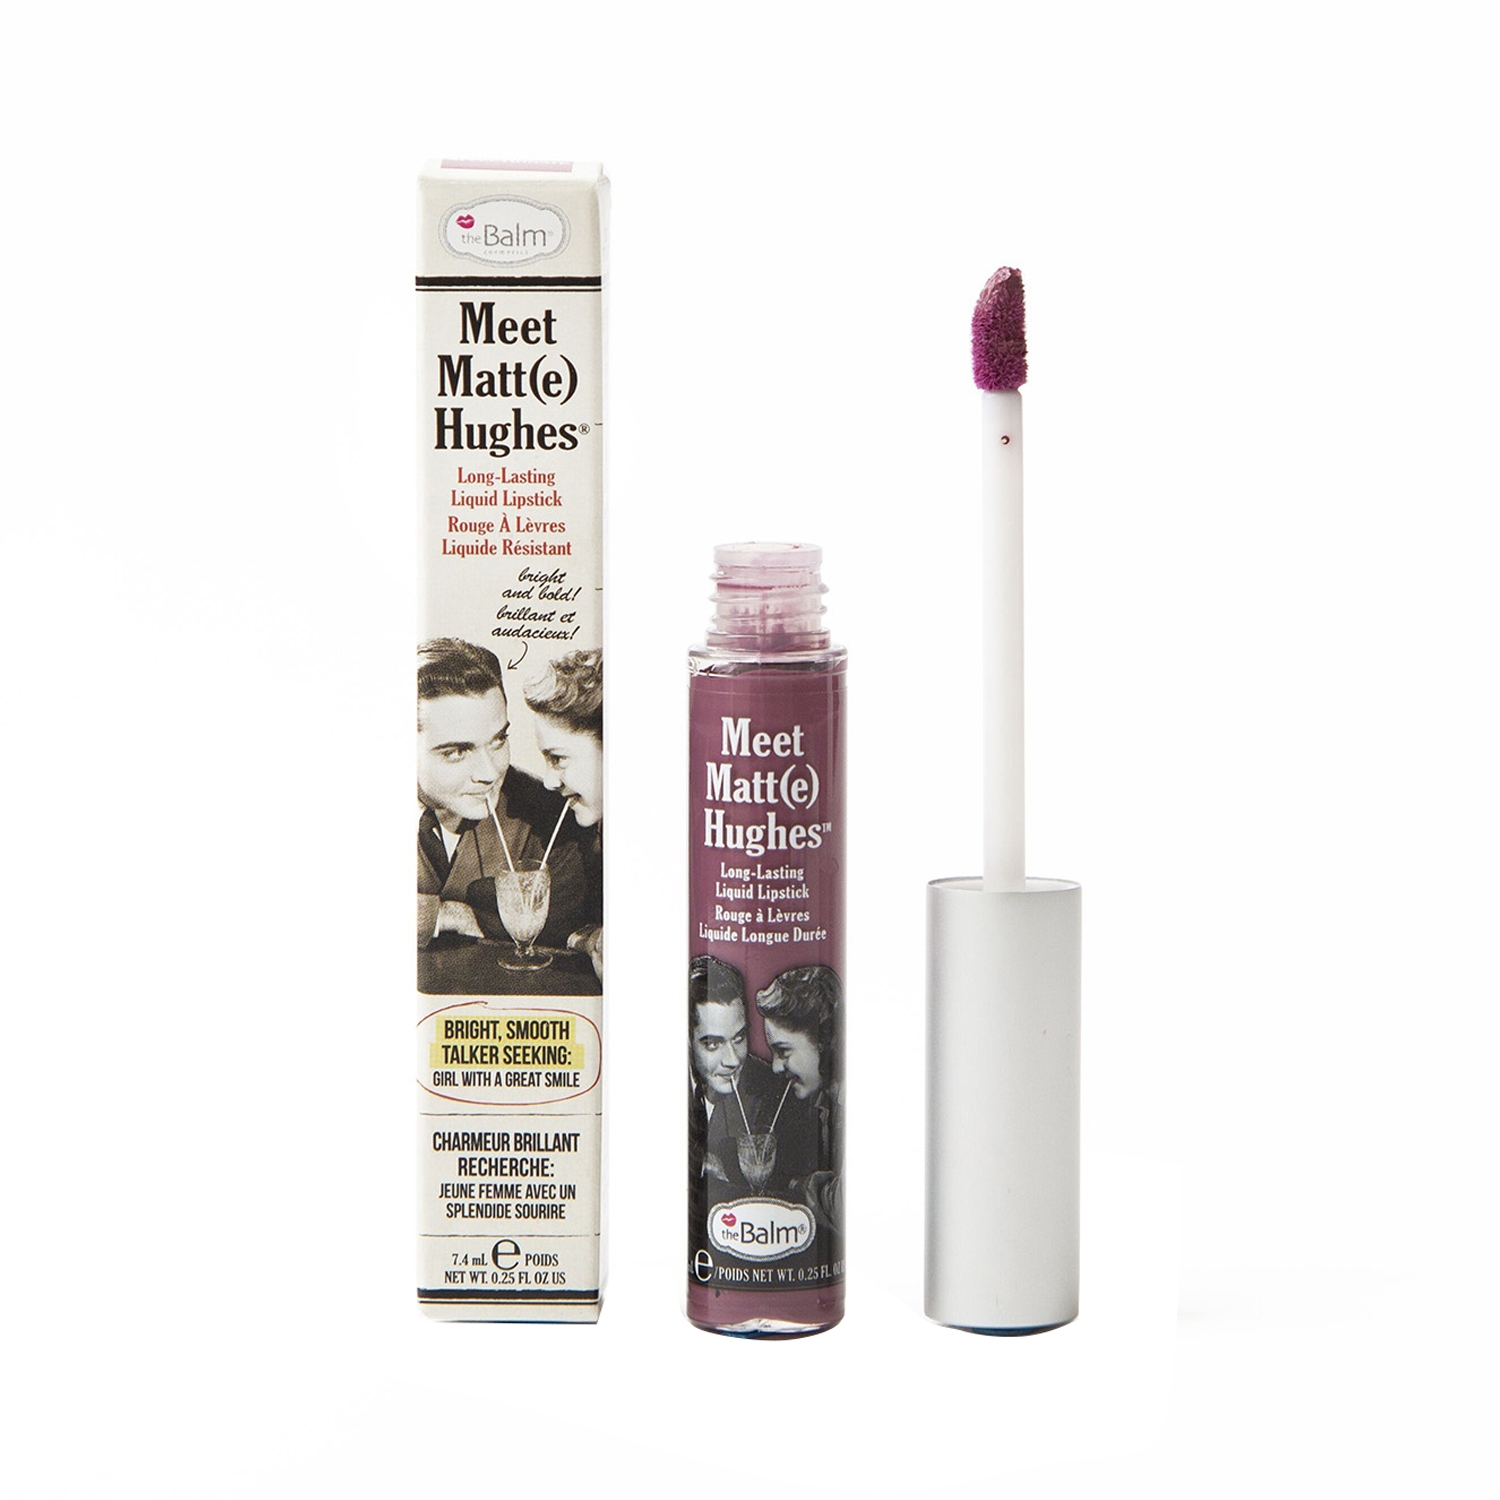 theBalm Cosmetics Meet Matte Hughes Liquid Lipstick - Affectionate (7.4ml)